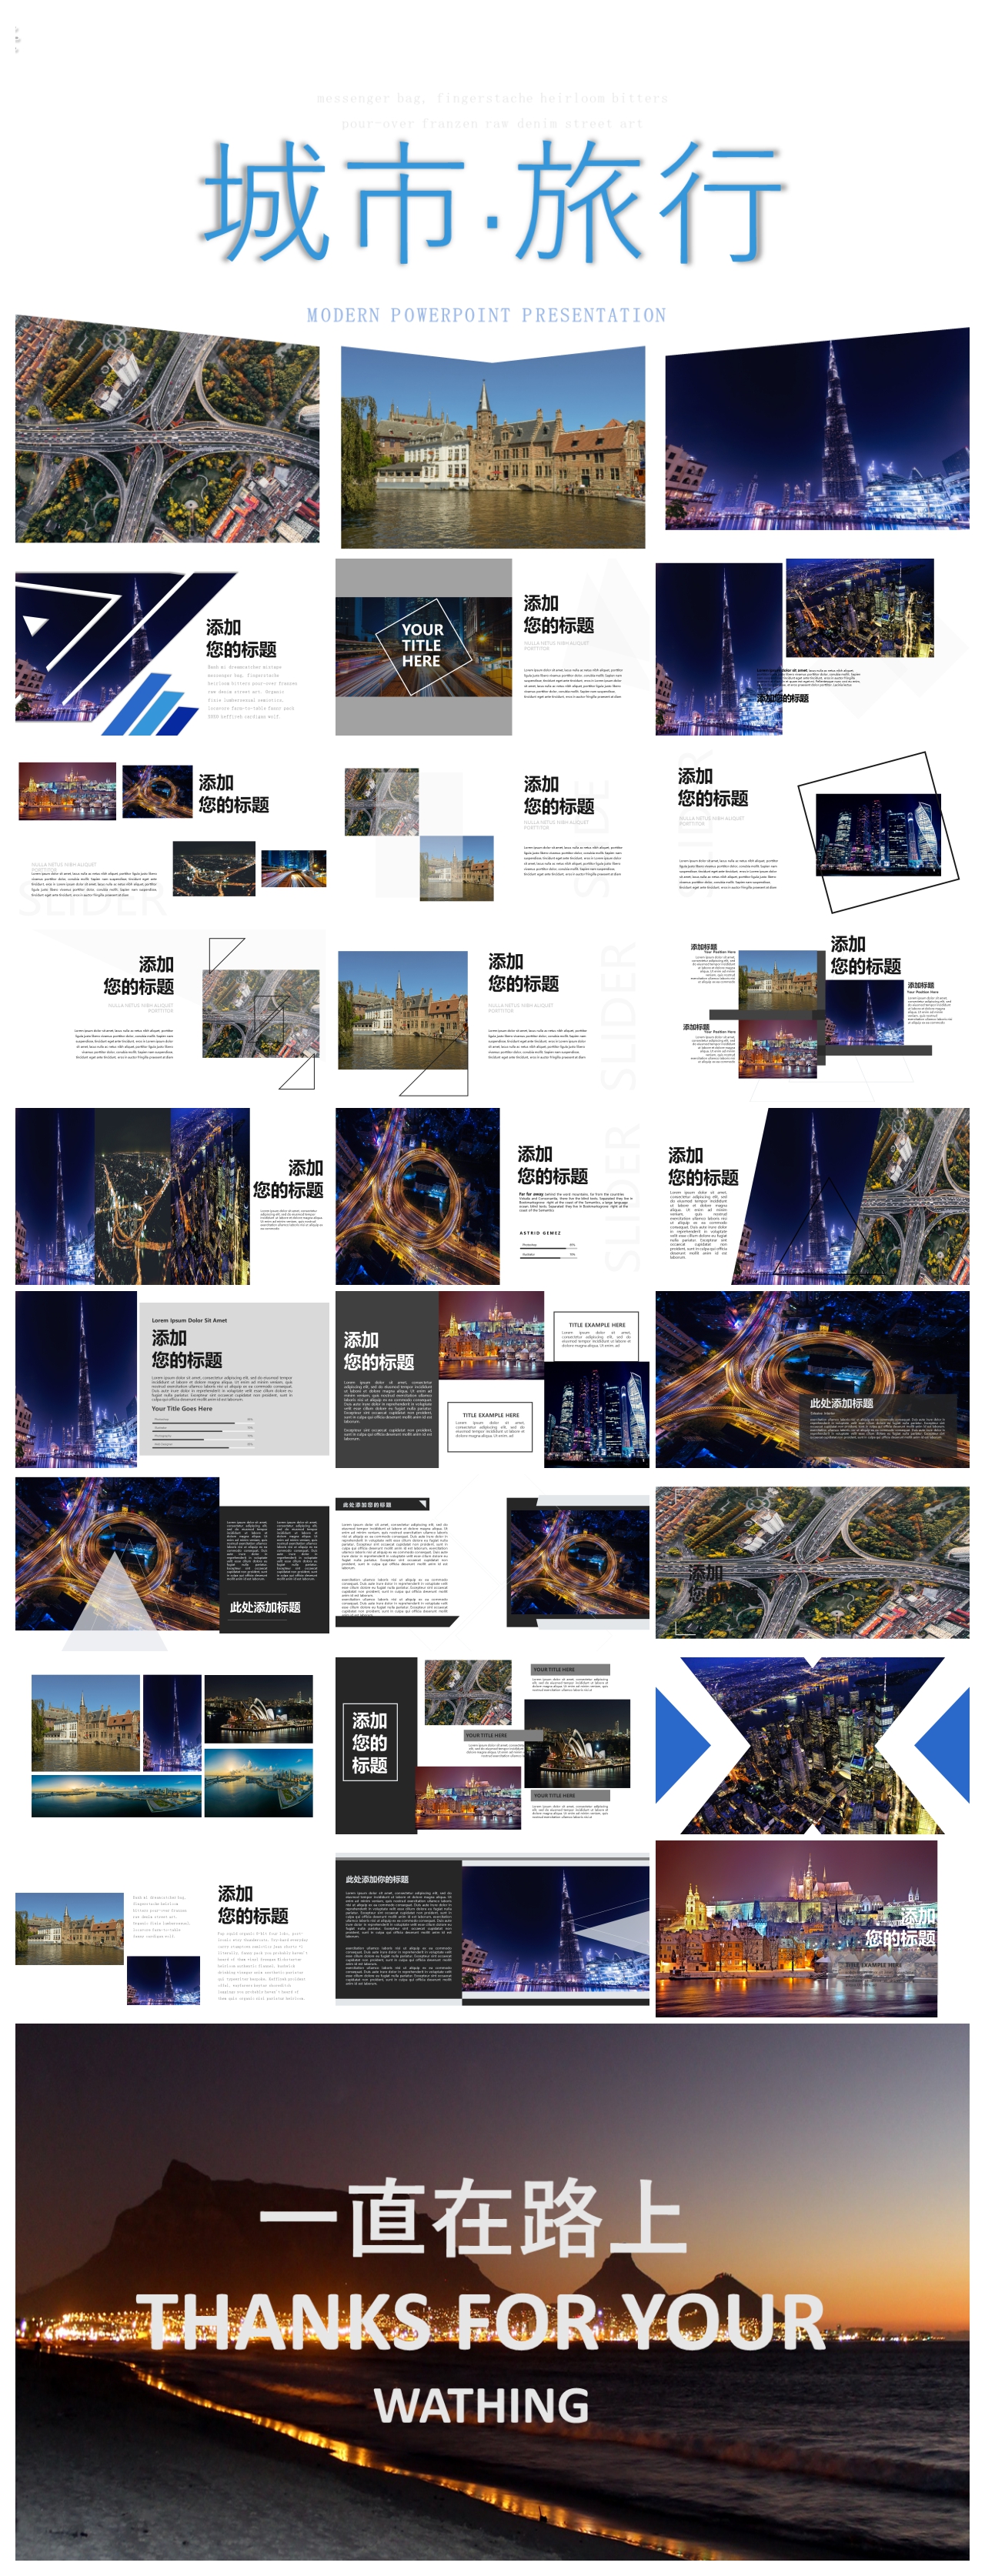 创意旅游相册城市旅行图片展示企业宣传旅游日记PPT模板